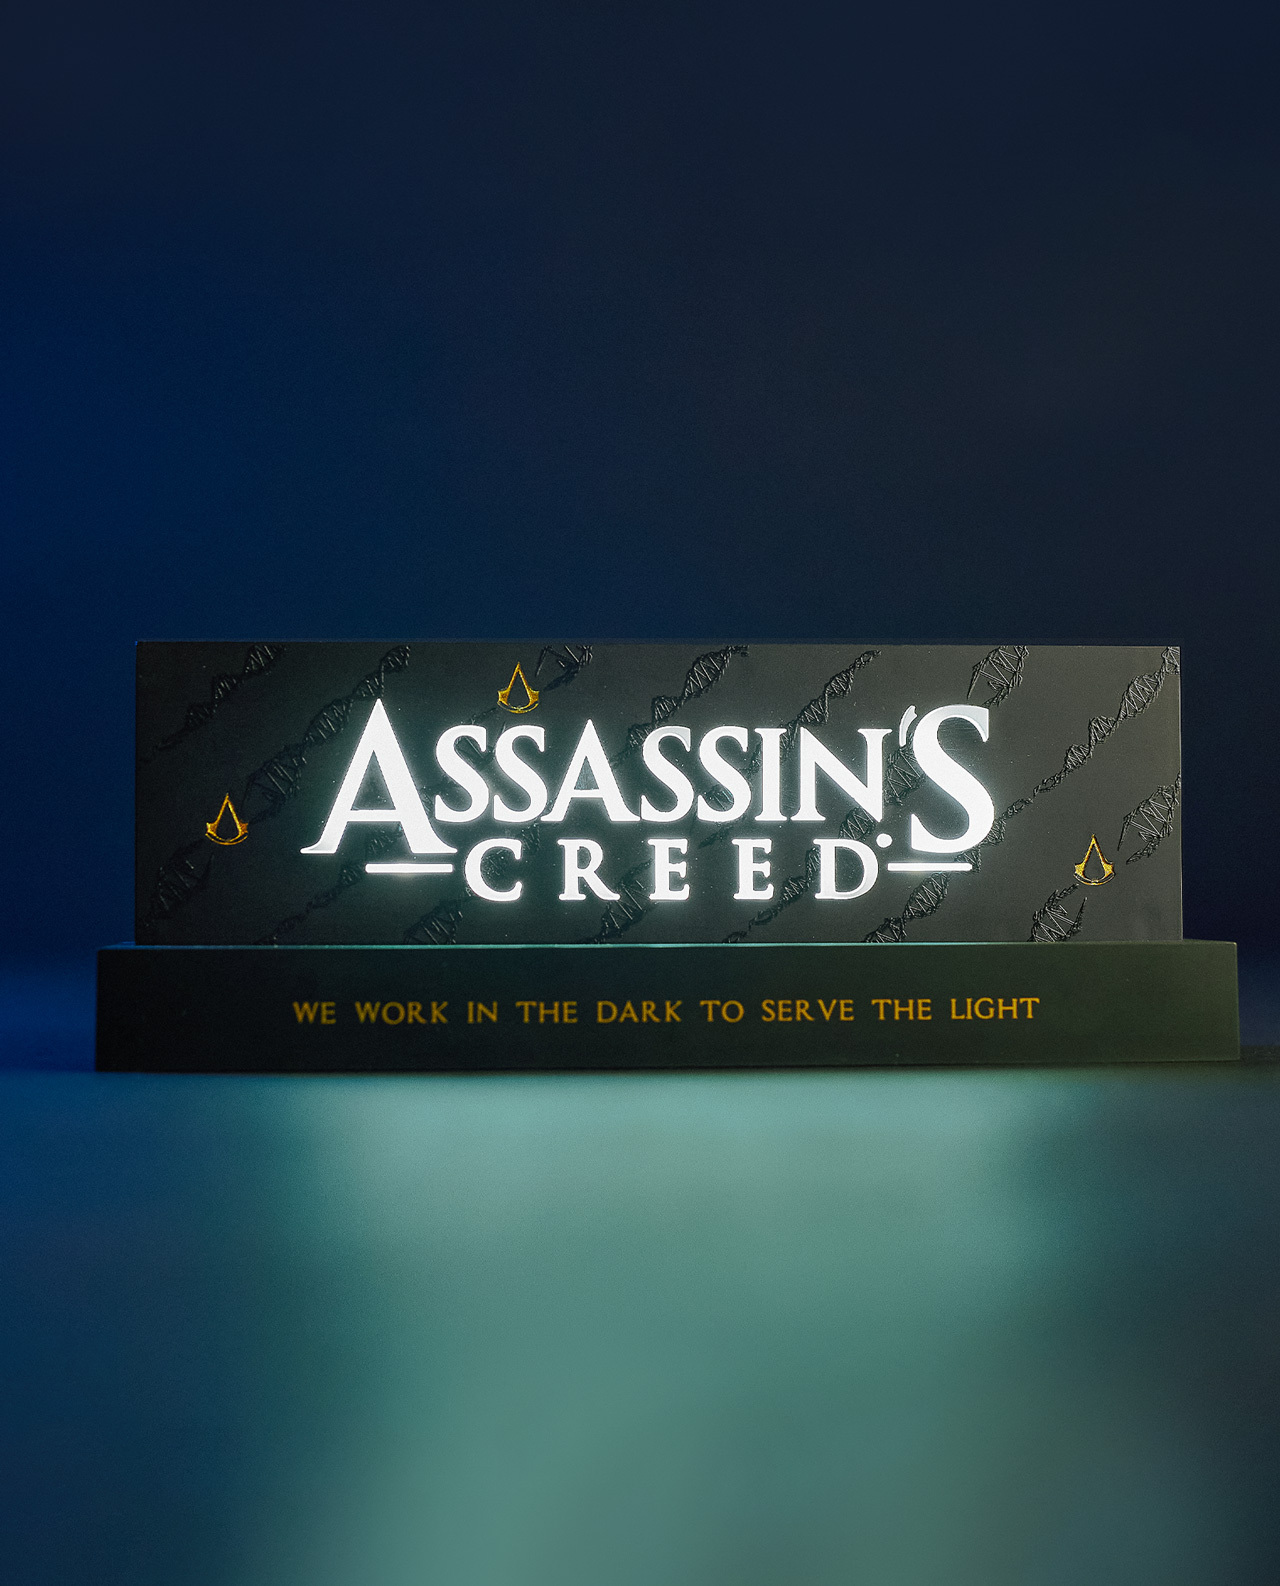 light_logo_assassin’s_creed_original_ubisoft_neamedia_icons_video_games2